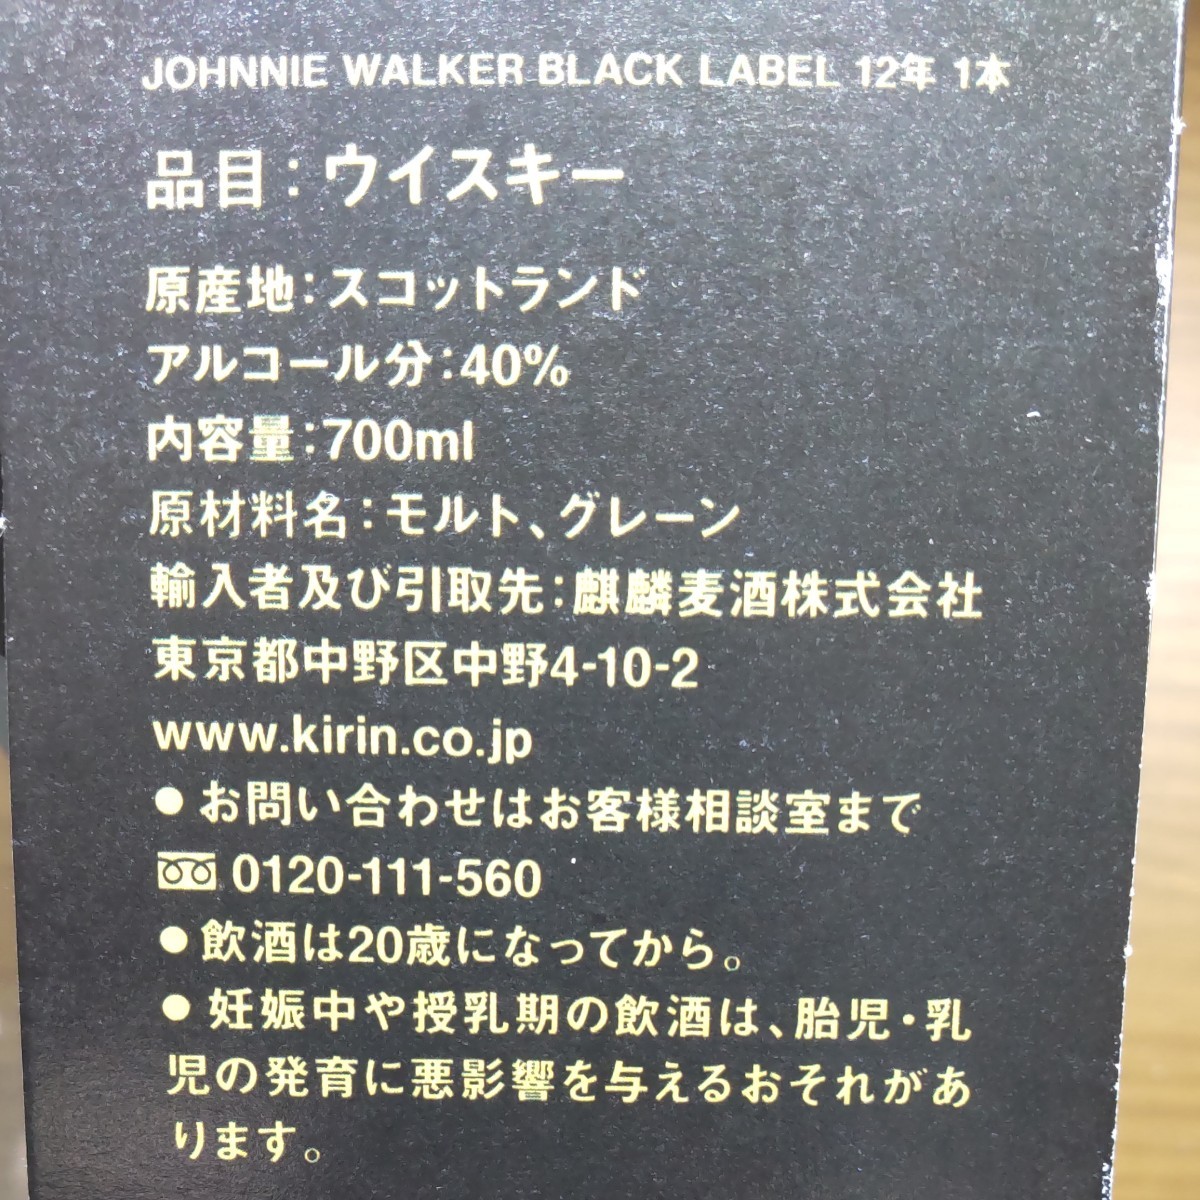 ジョニーウォーカー ブラックラベル 700ml  箱付き ハイボール用グラス(370ml)付き 限定版 ギフトパック